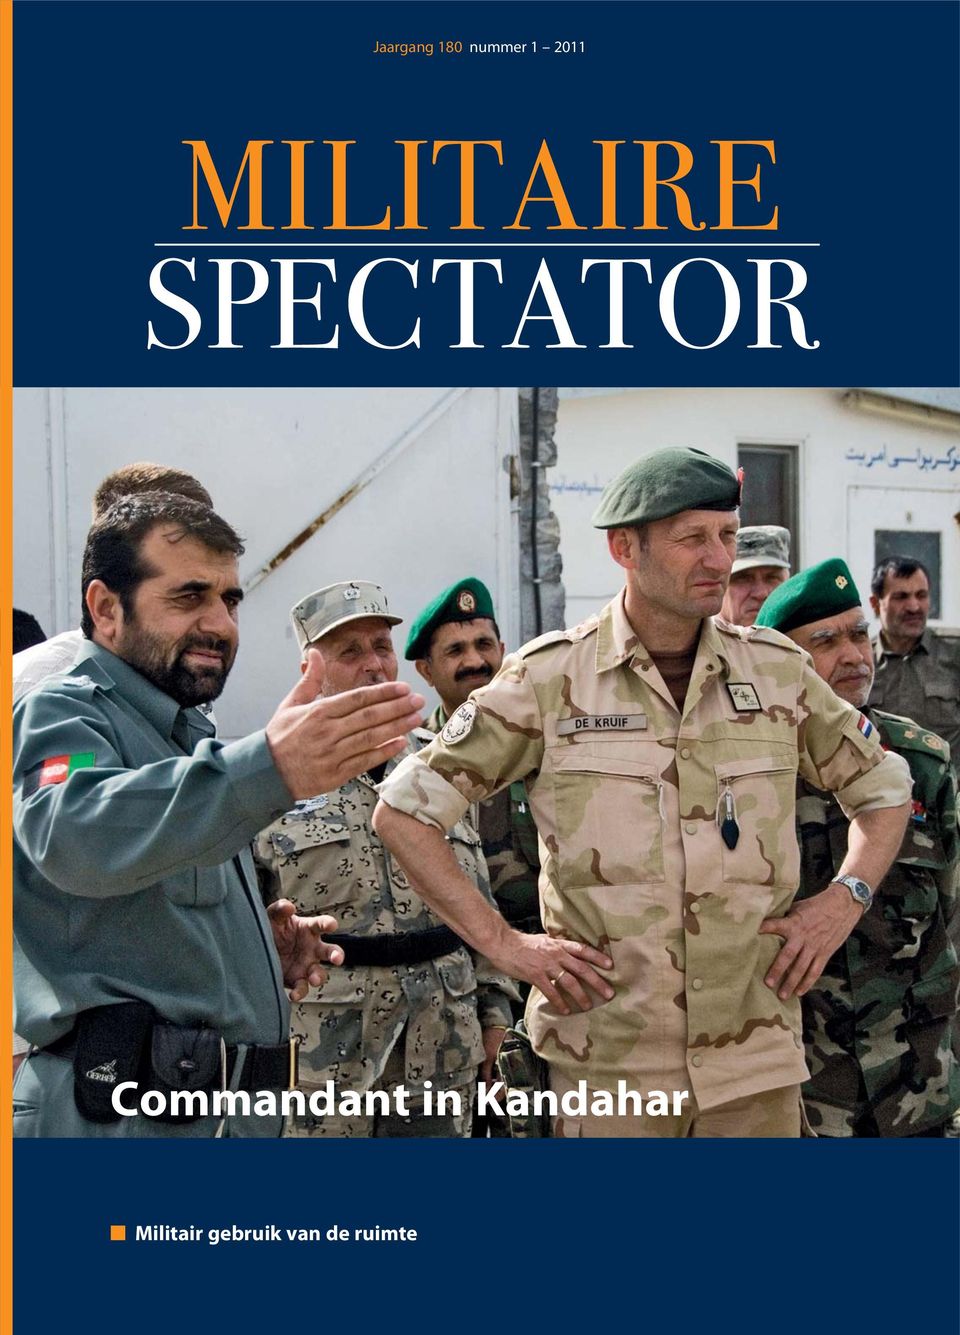 Commandant in Kandahar